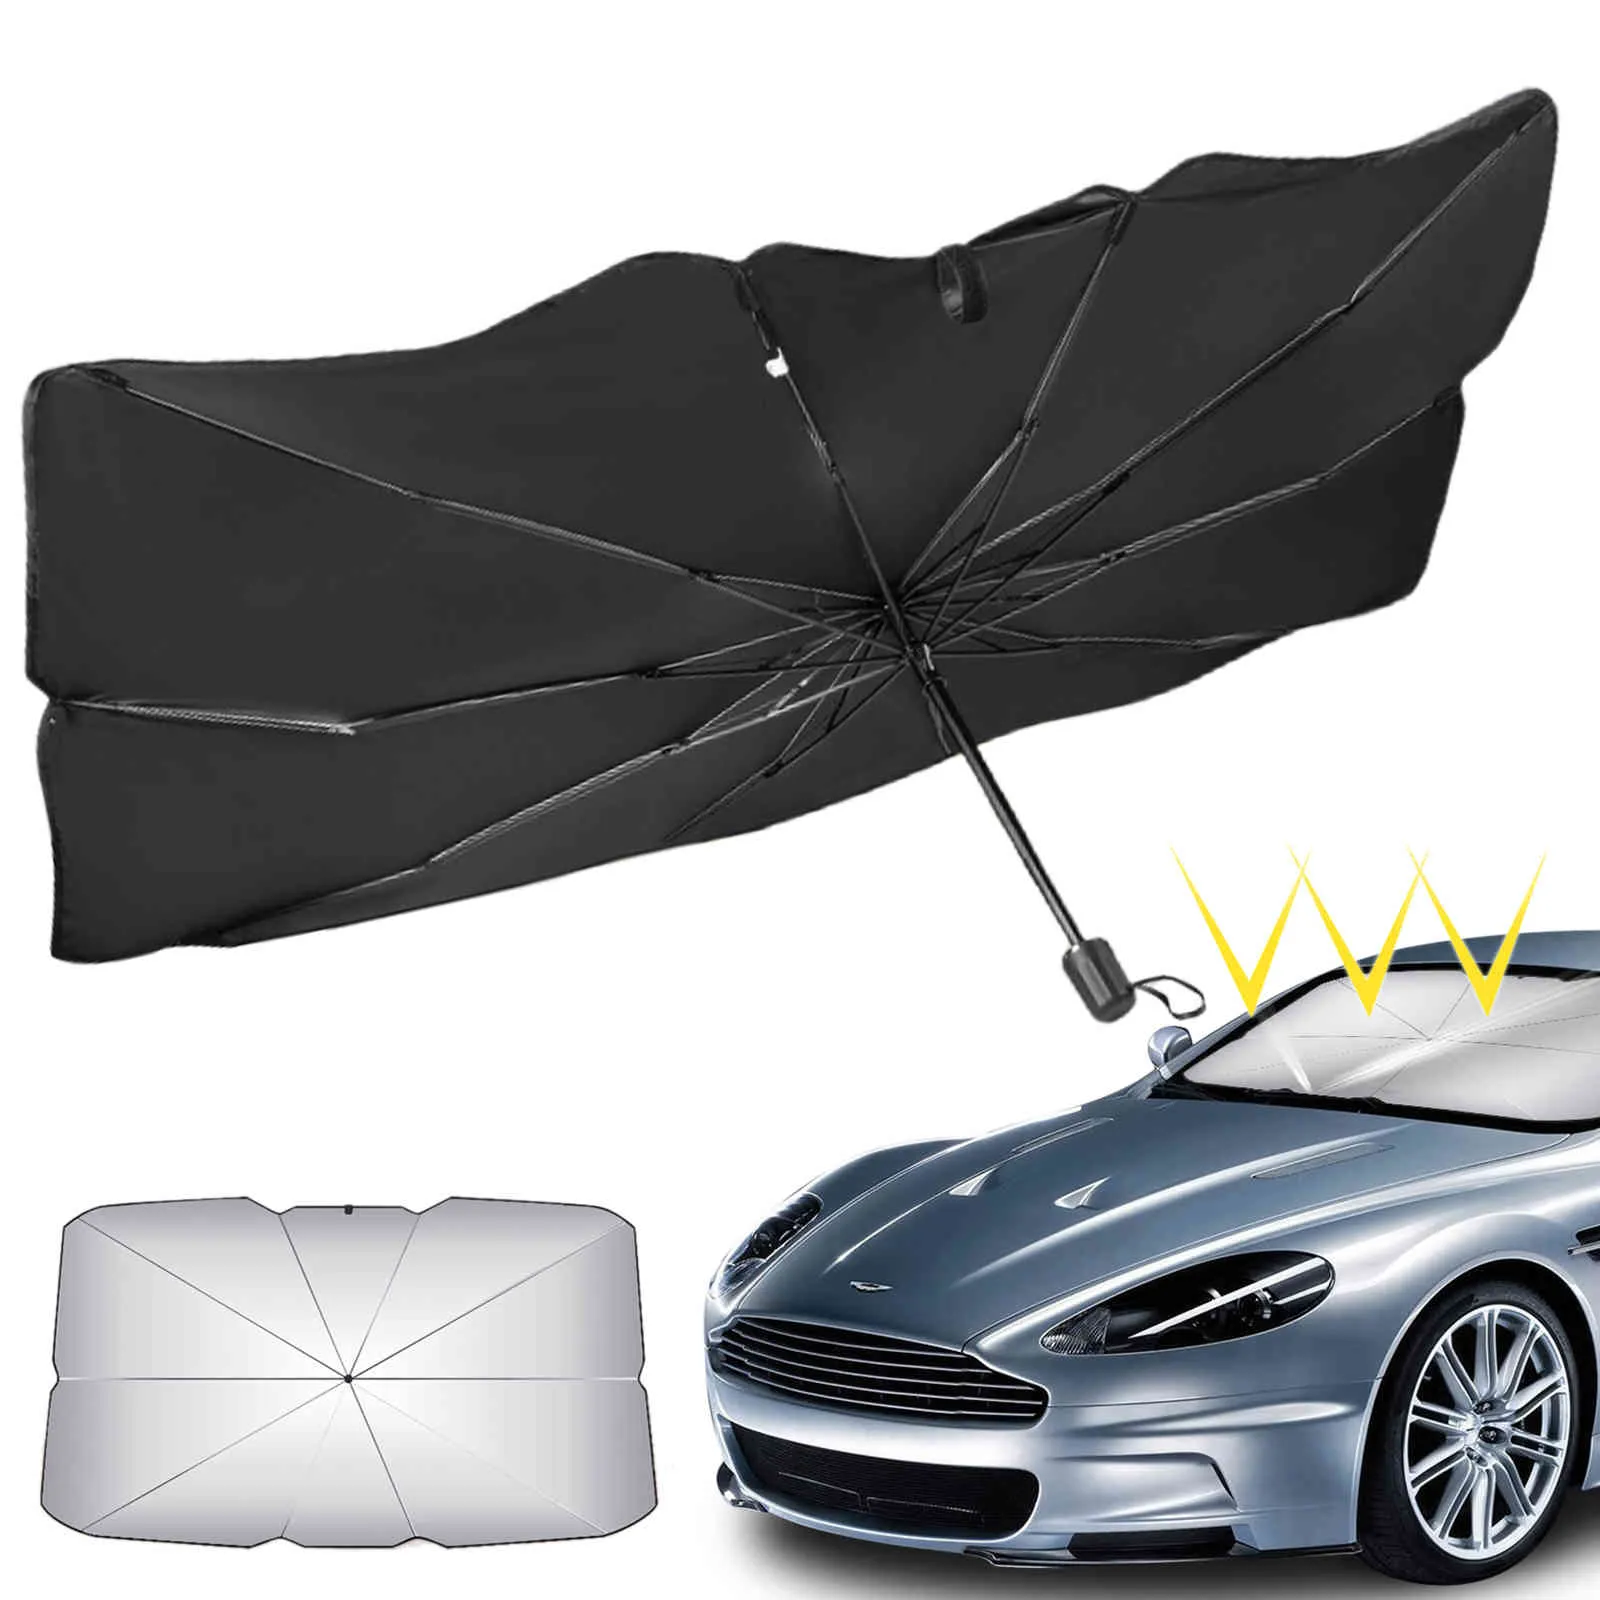 Auto Frontscheibe Windschutzscheibe Sonnenschirm Regenschirm Sonnenschutz Sonnenschirm Wärmedämmung für Auto SUV